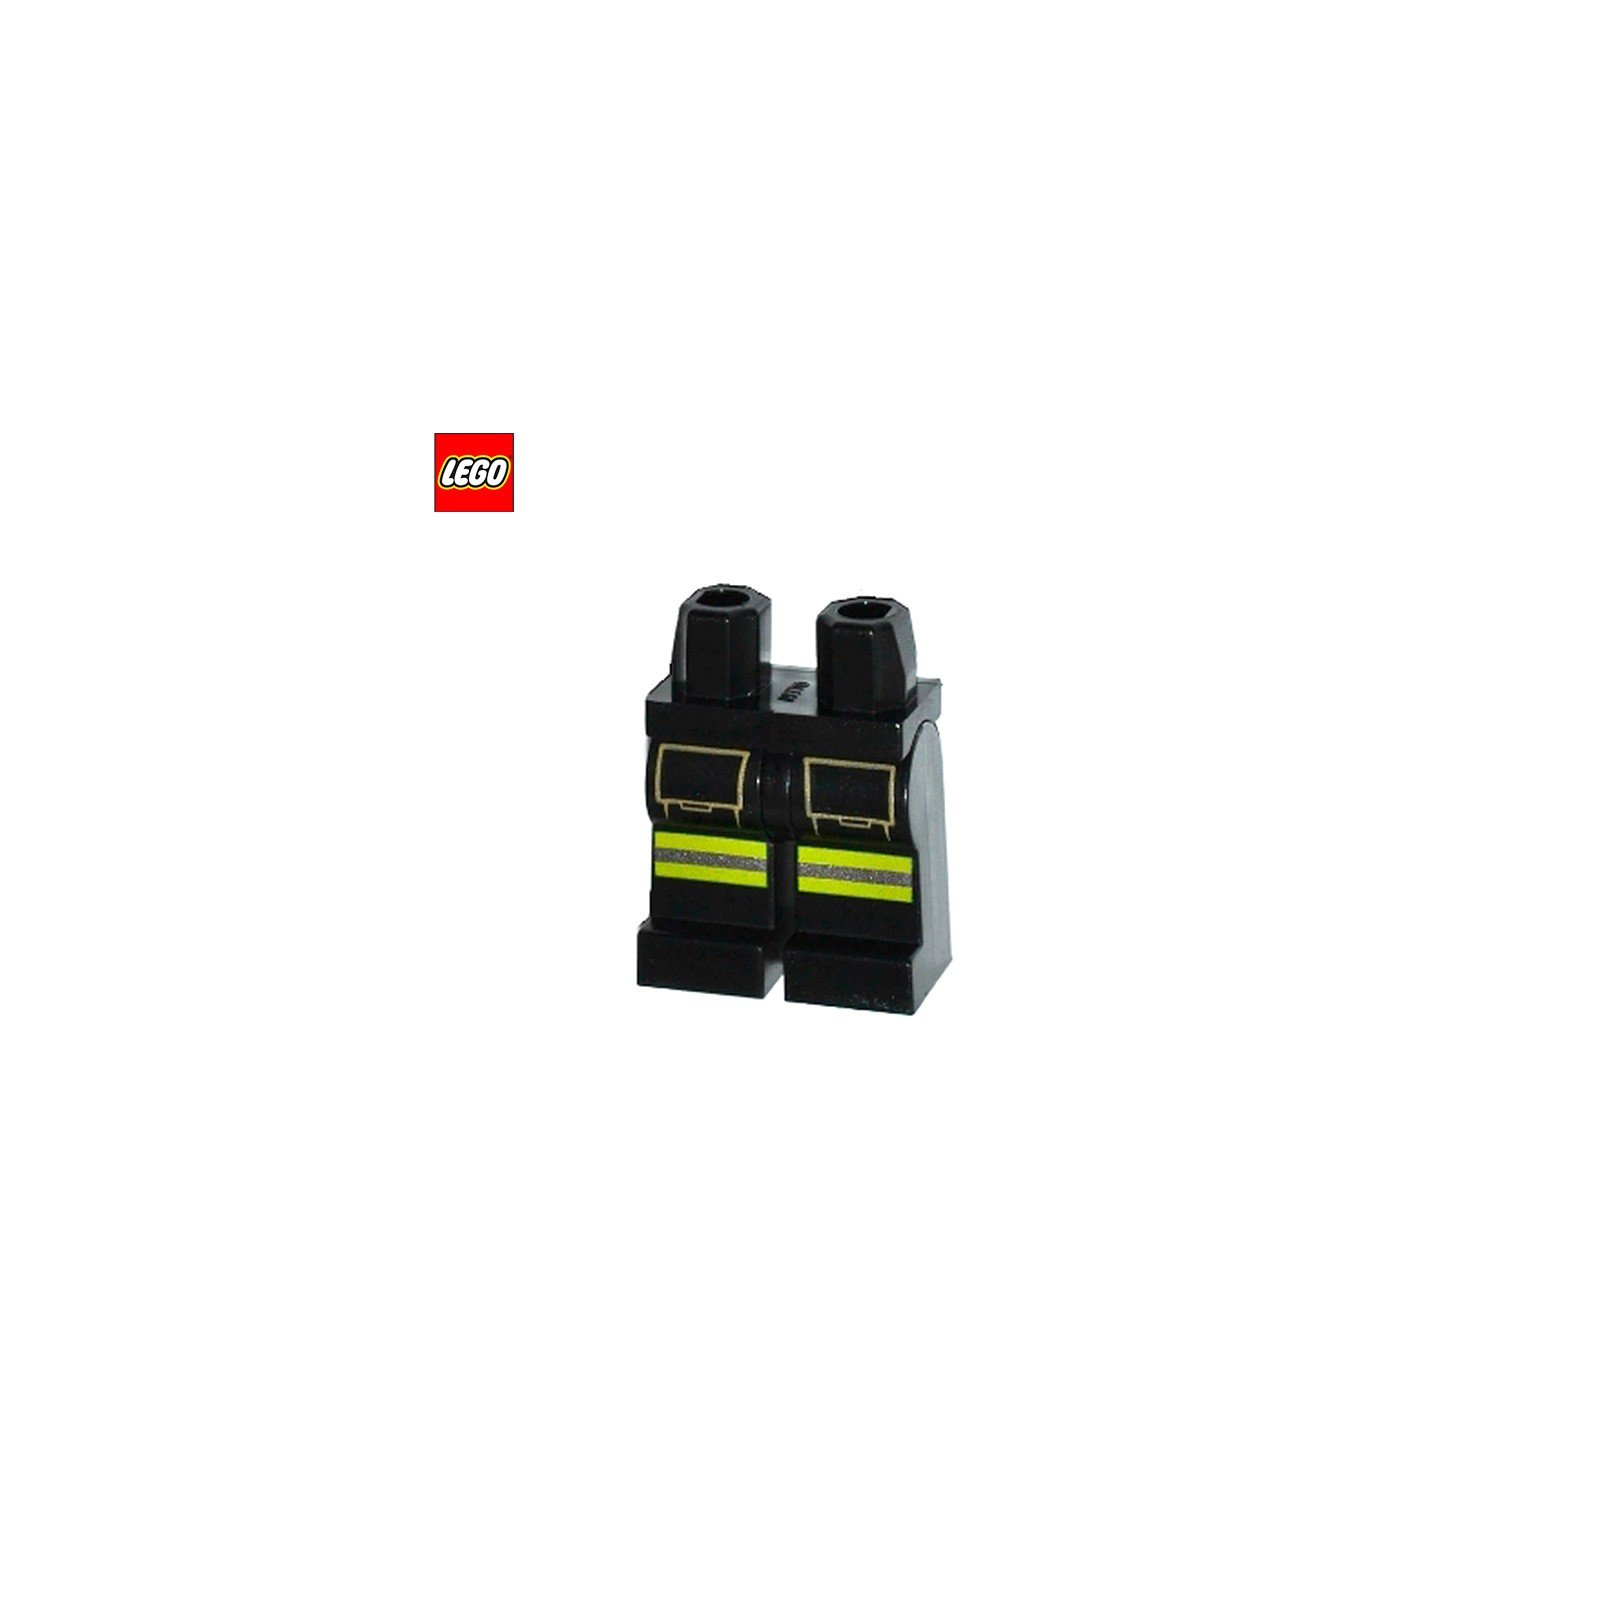 Jambes pour minifigurine avec bandes réfléchissantes (Pompier) - Pièce LEGO® 12530